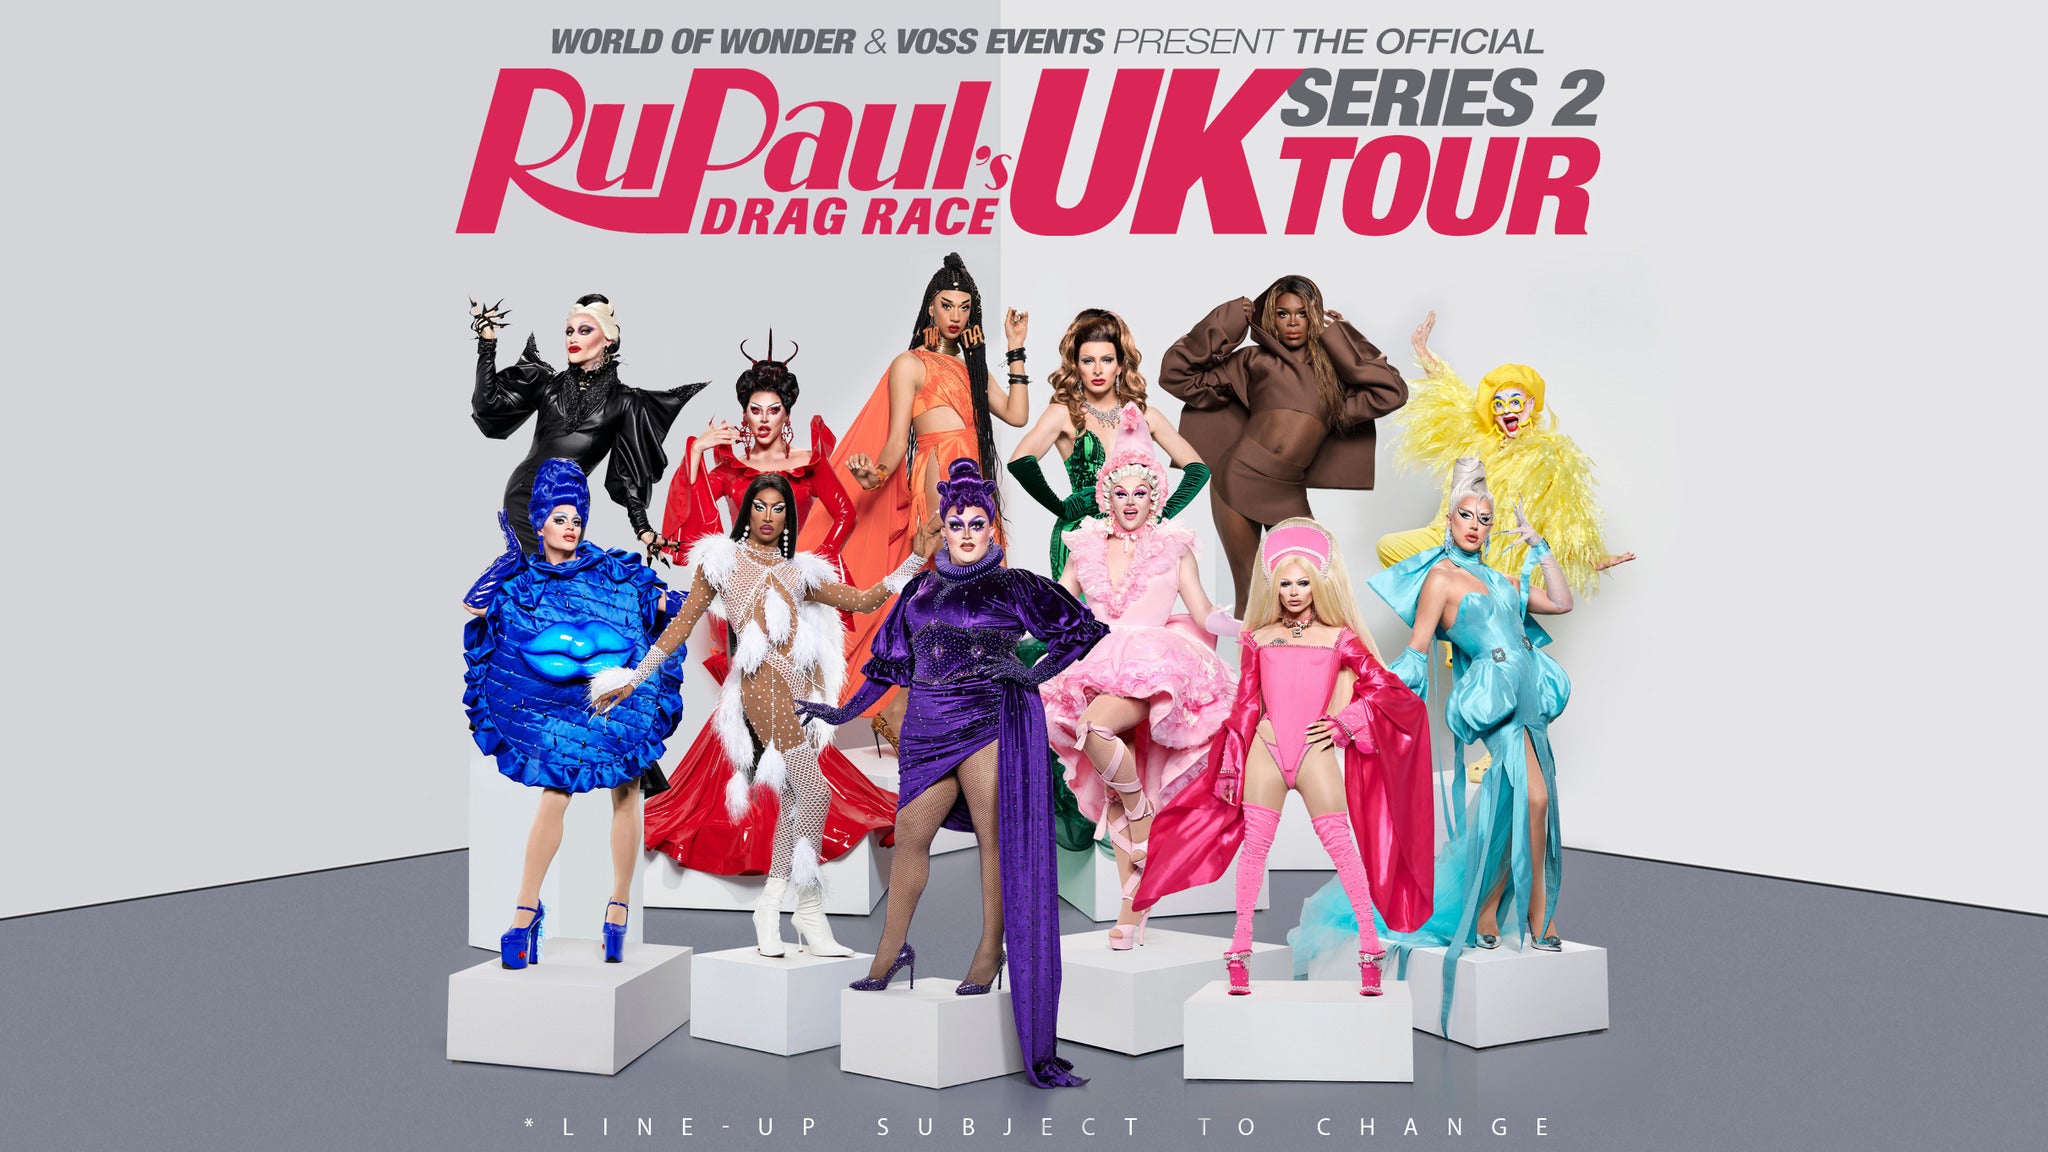 RuPaul's Drag Race UK: Series 2 Tour